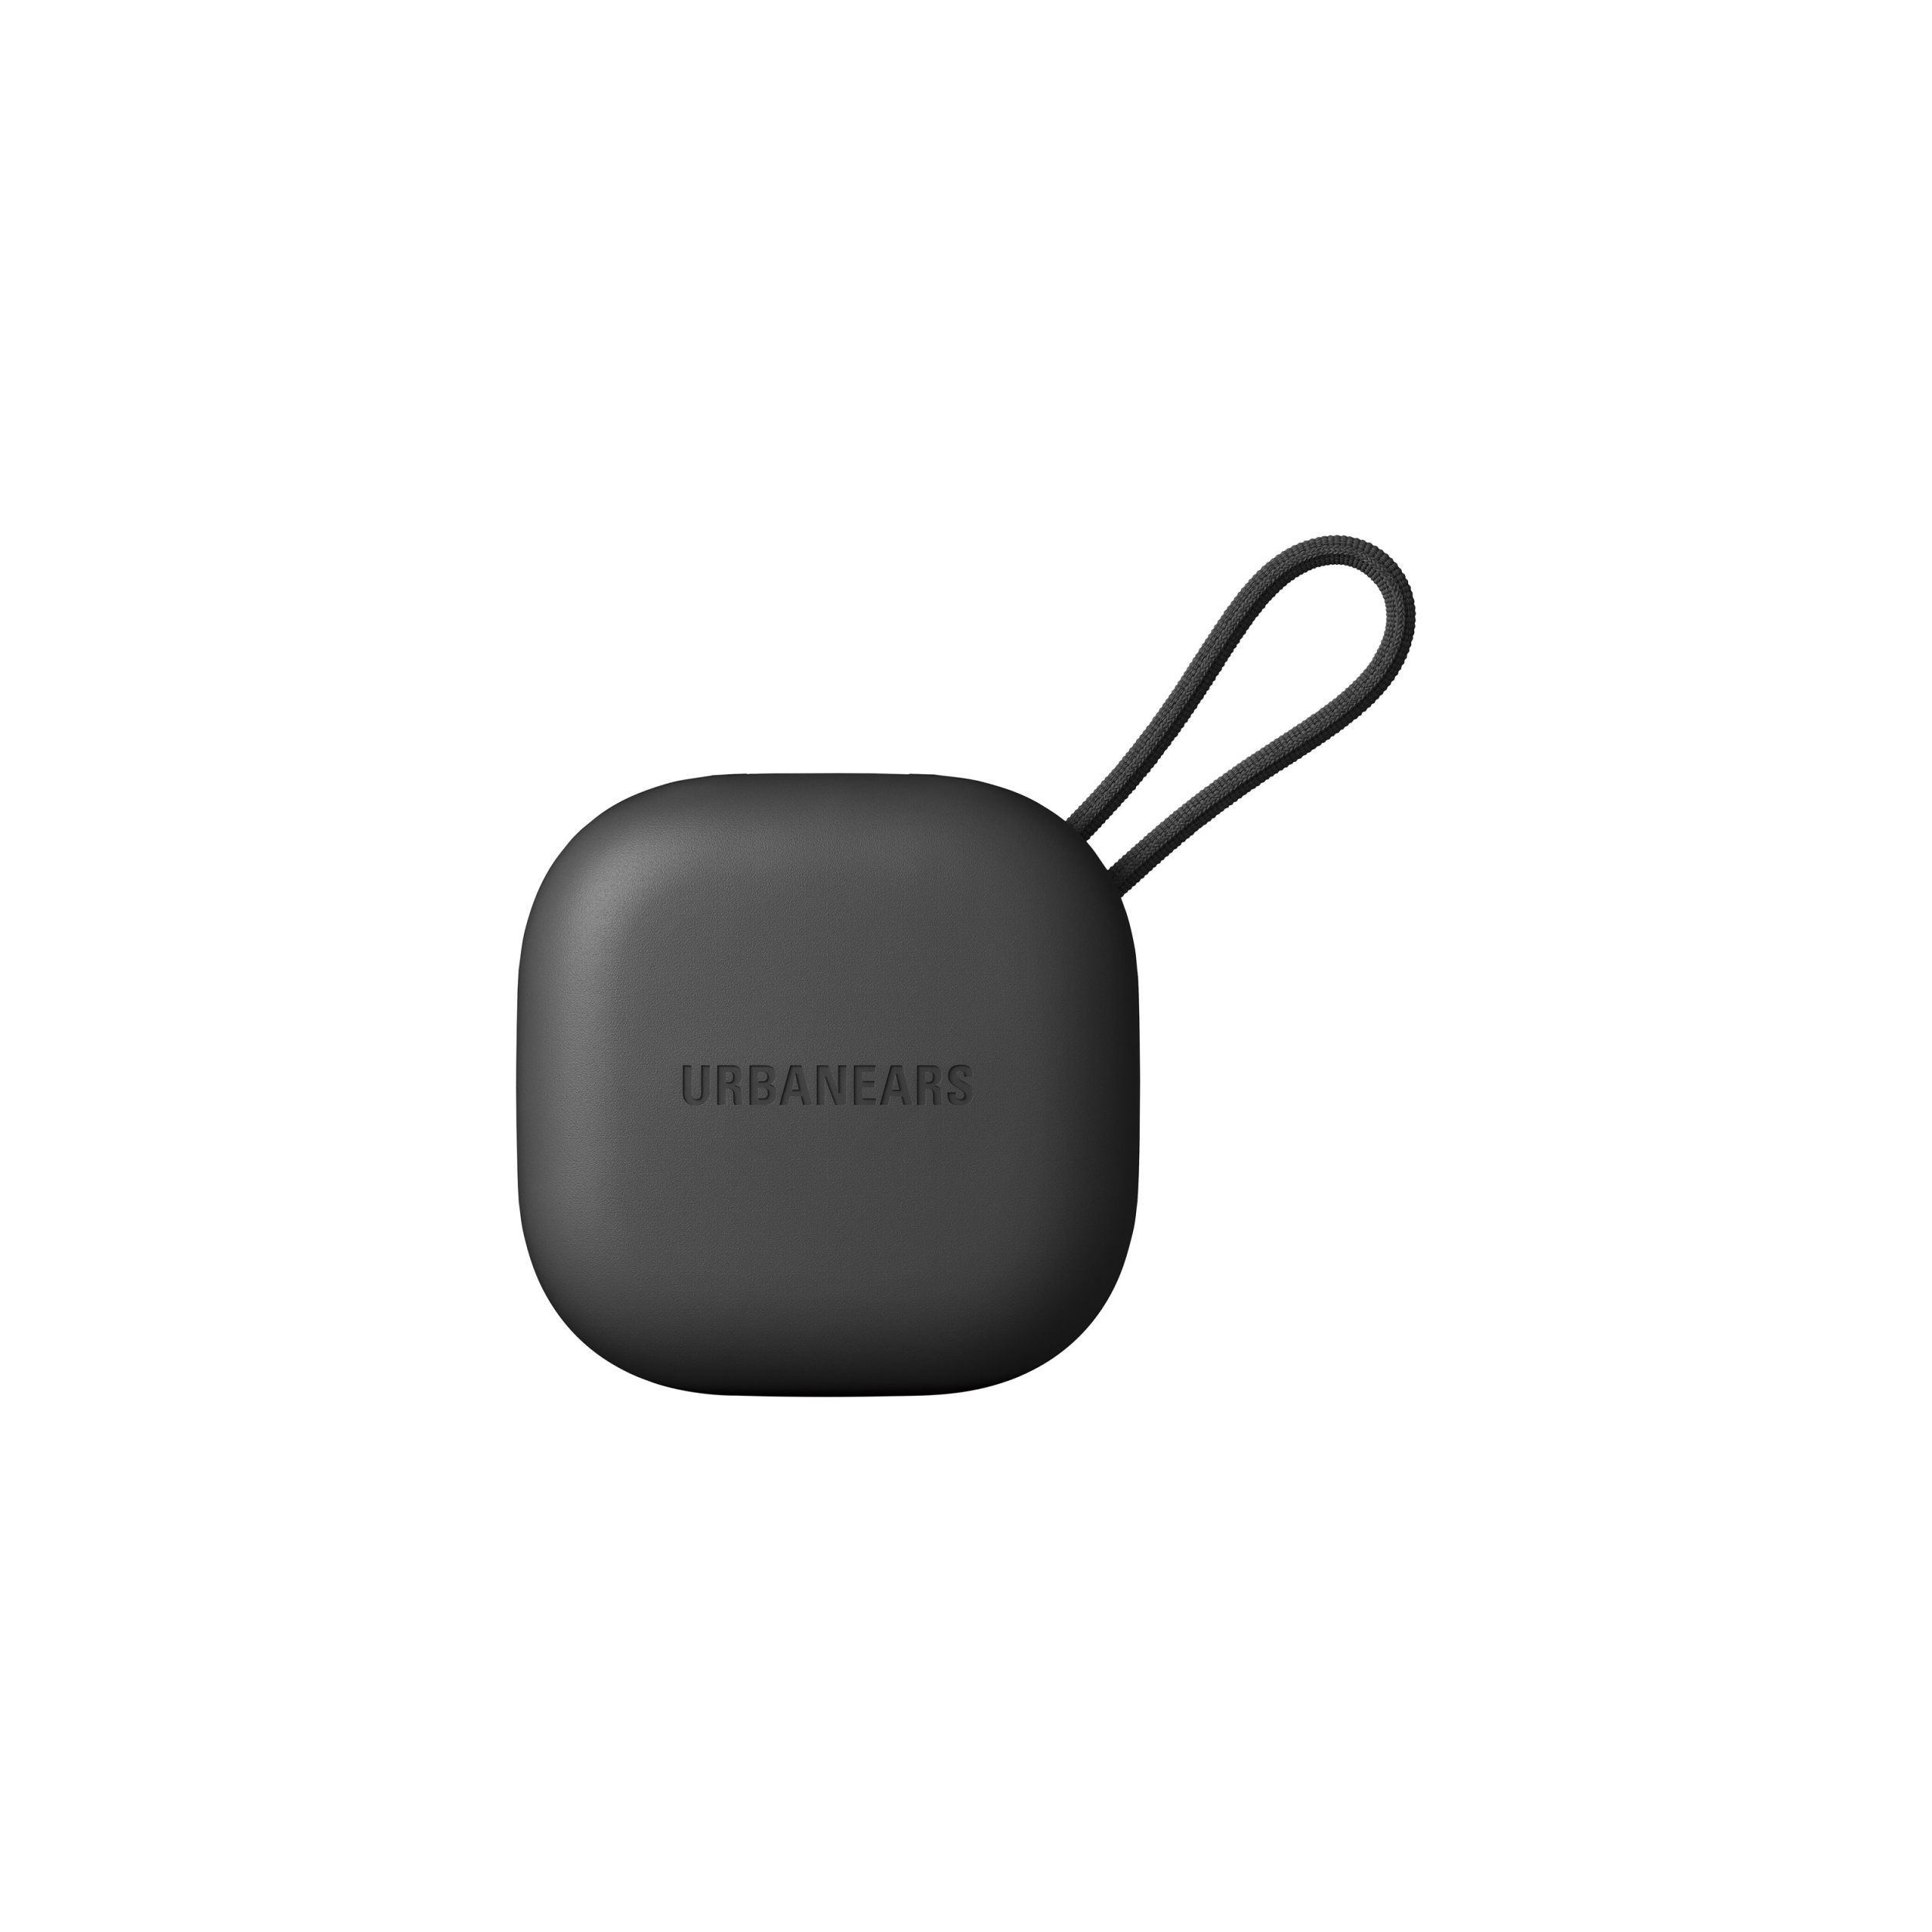 UrbanEars Luma True Wireless Ear-Pod Headphones Black- Open Box